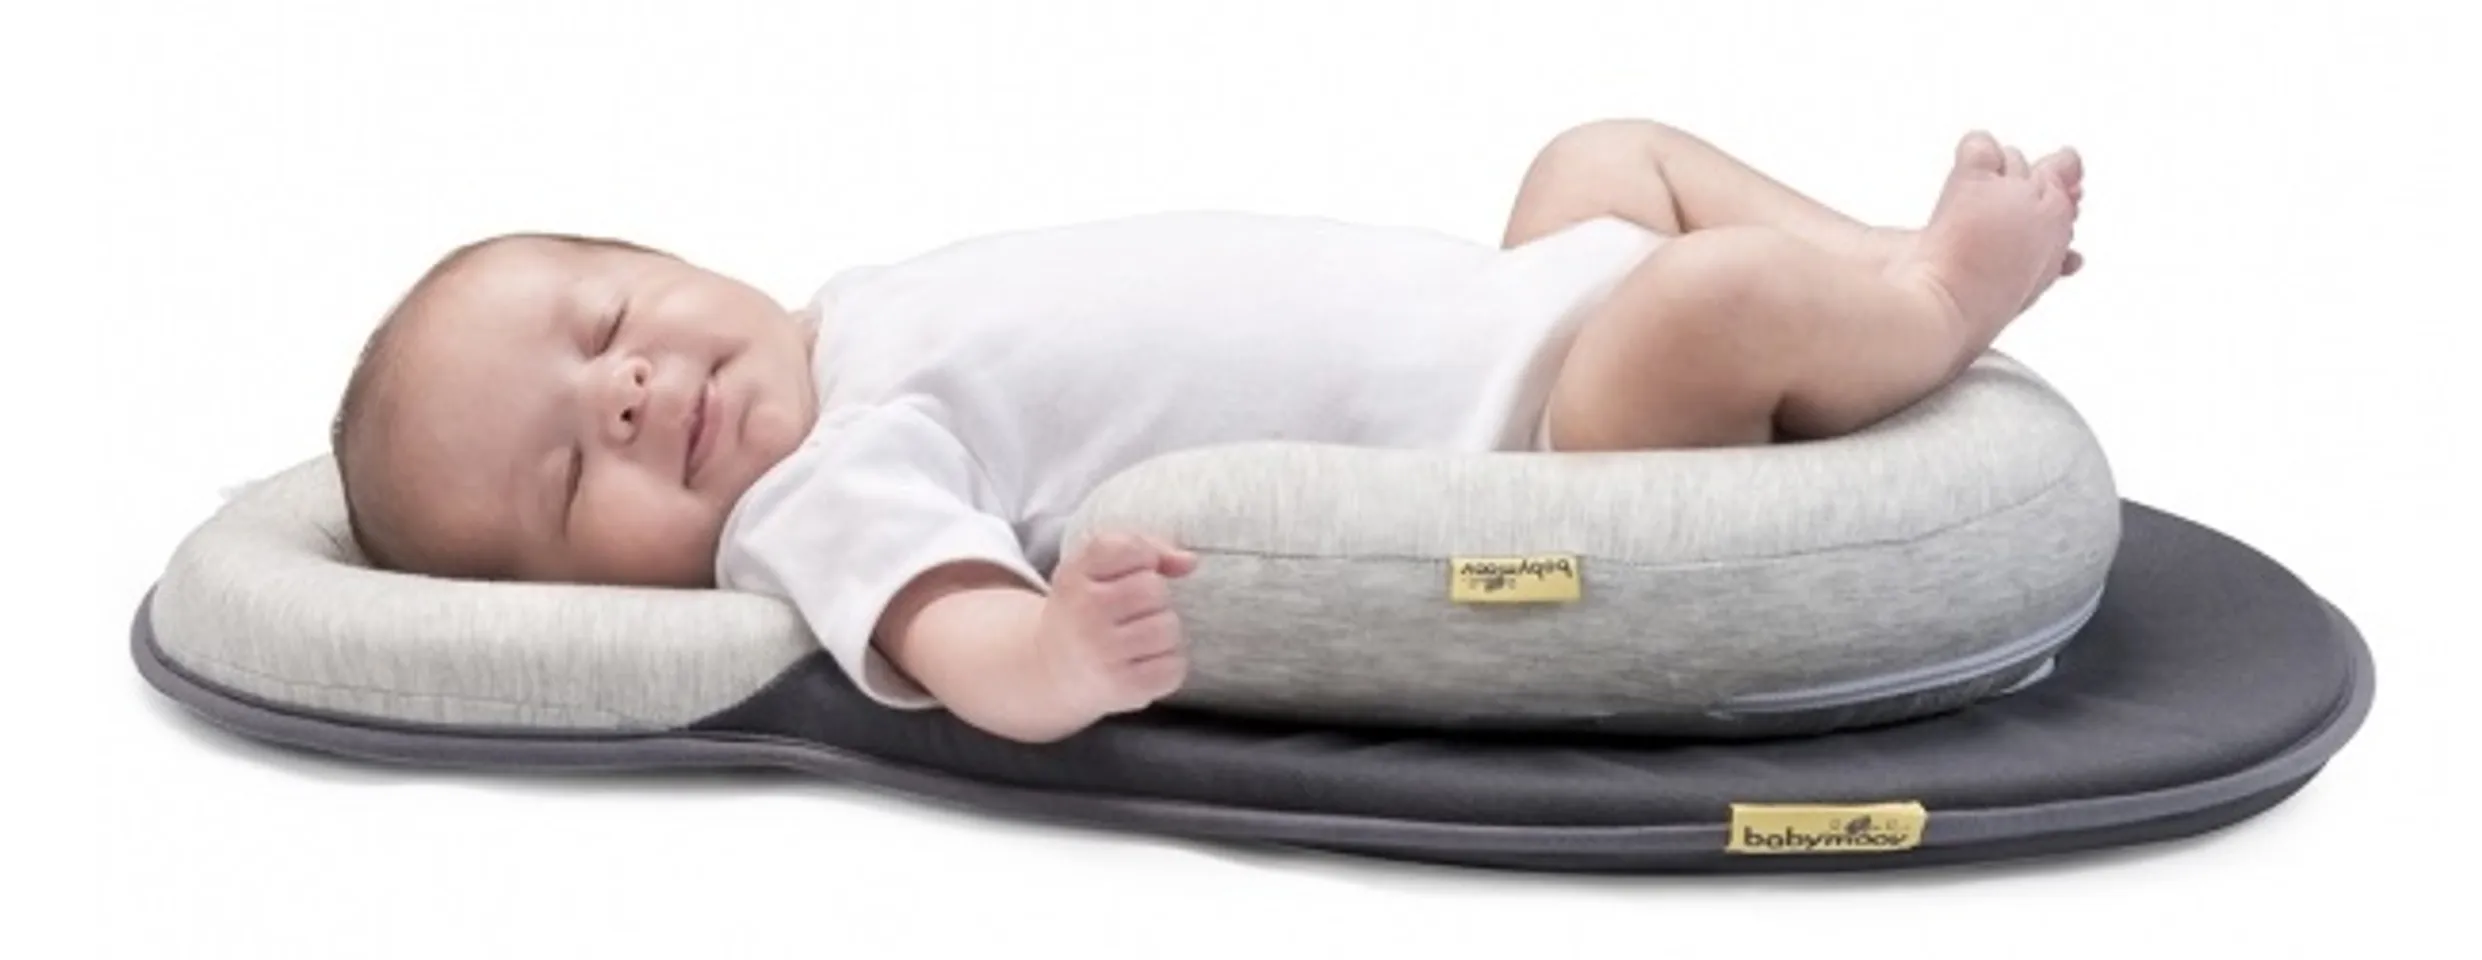 Đệm nằm đúng tư thế giúp bé có tư thế ngủ tự nhiên, tạo cho bé cảm giác an toàn